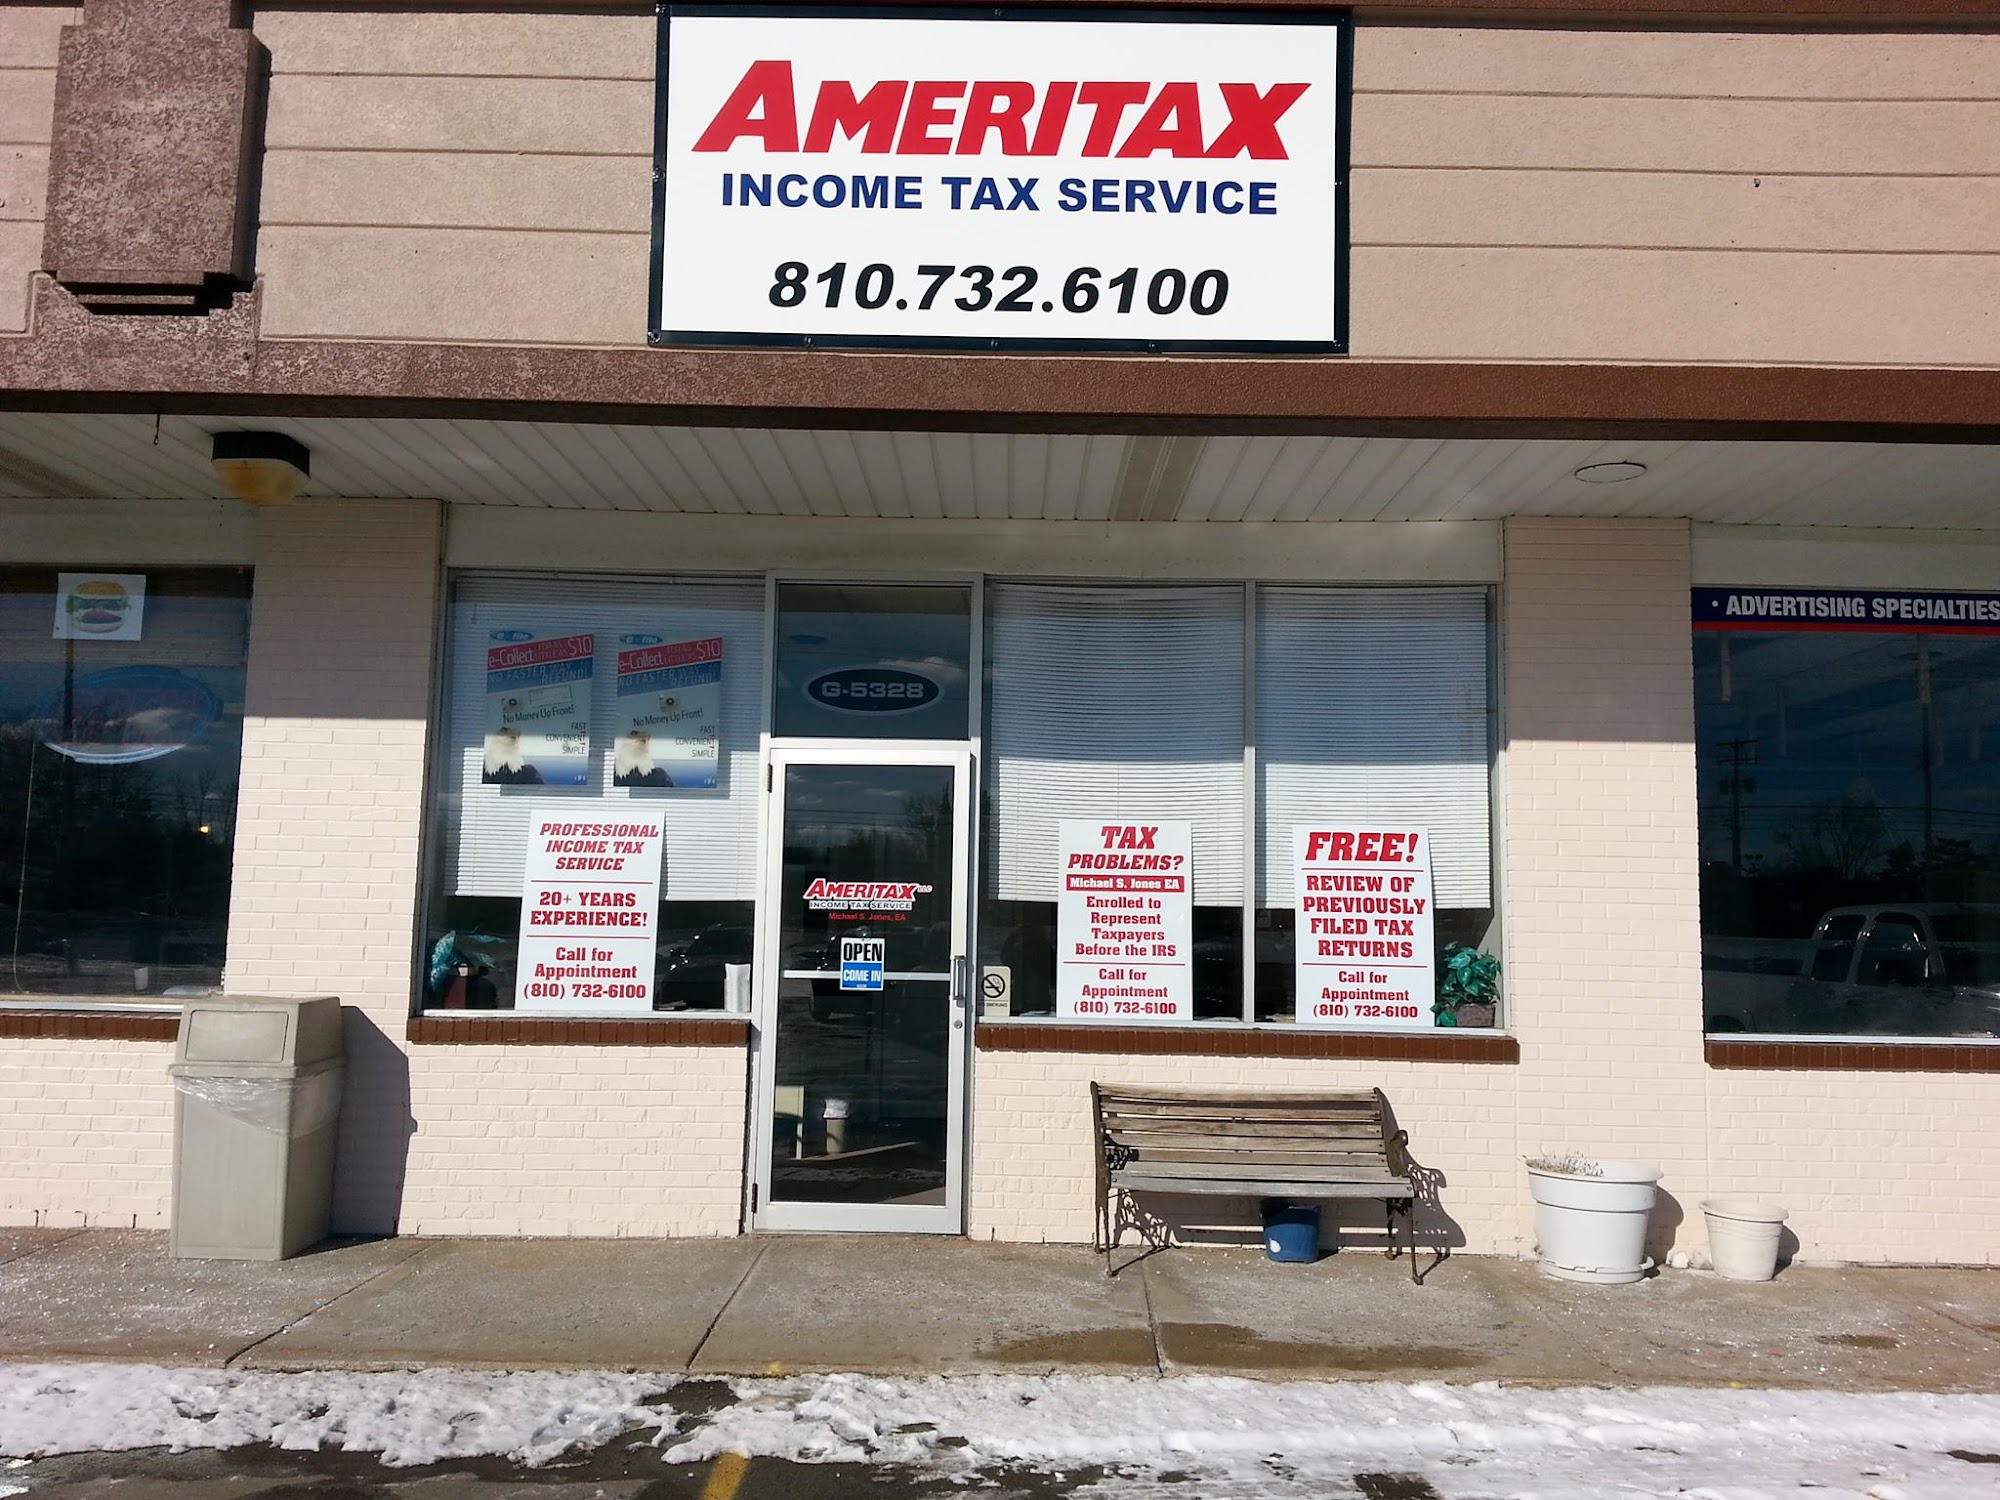 Ameritax, LLC Income Tax service